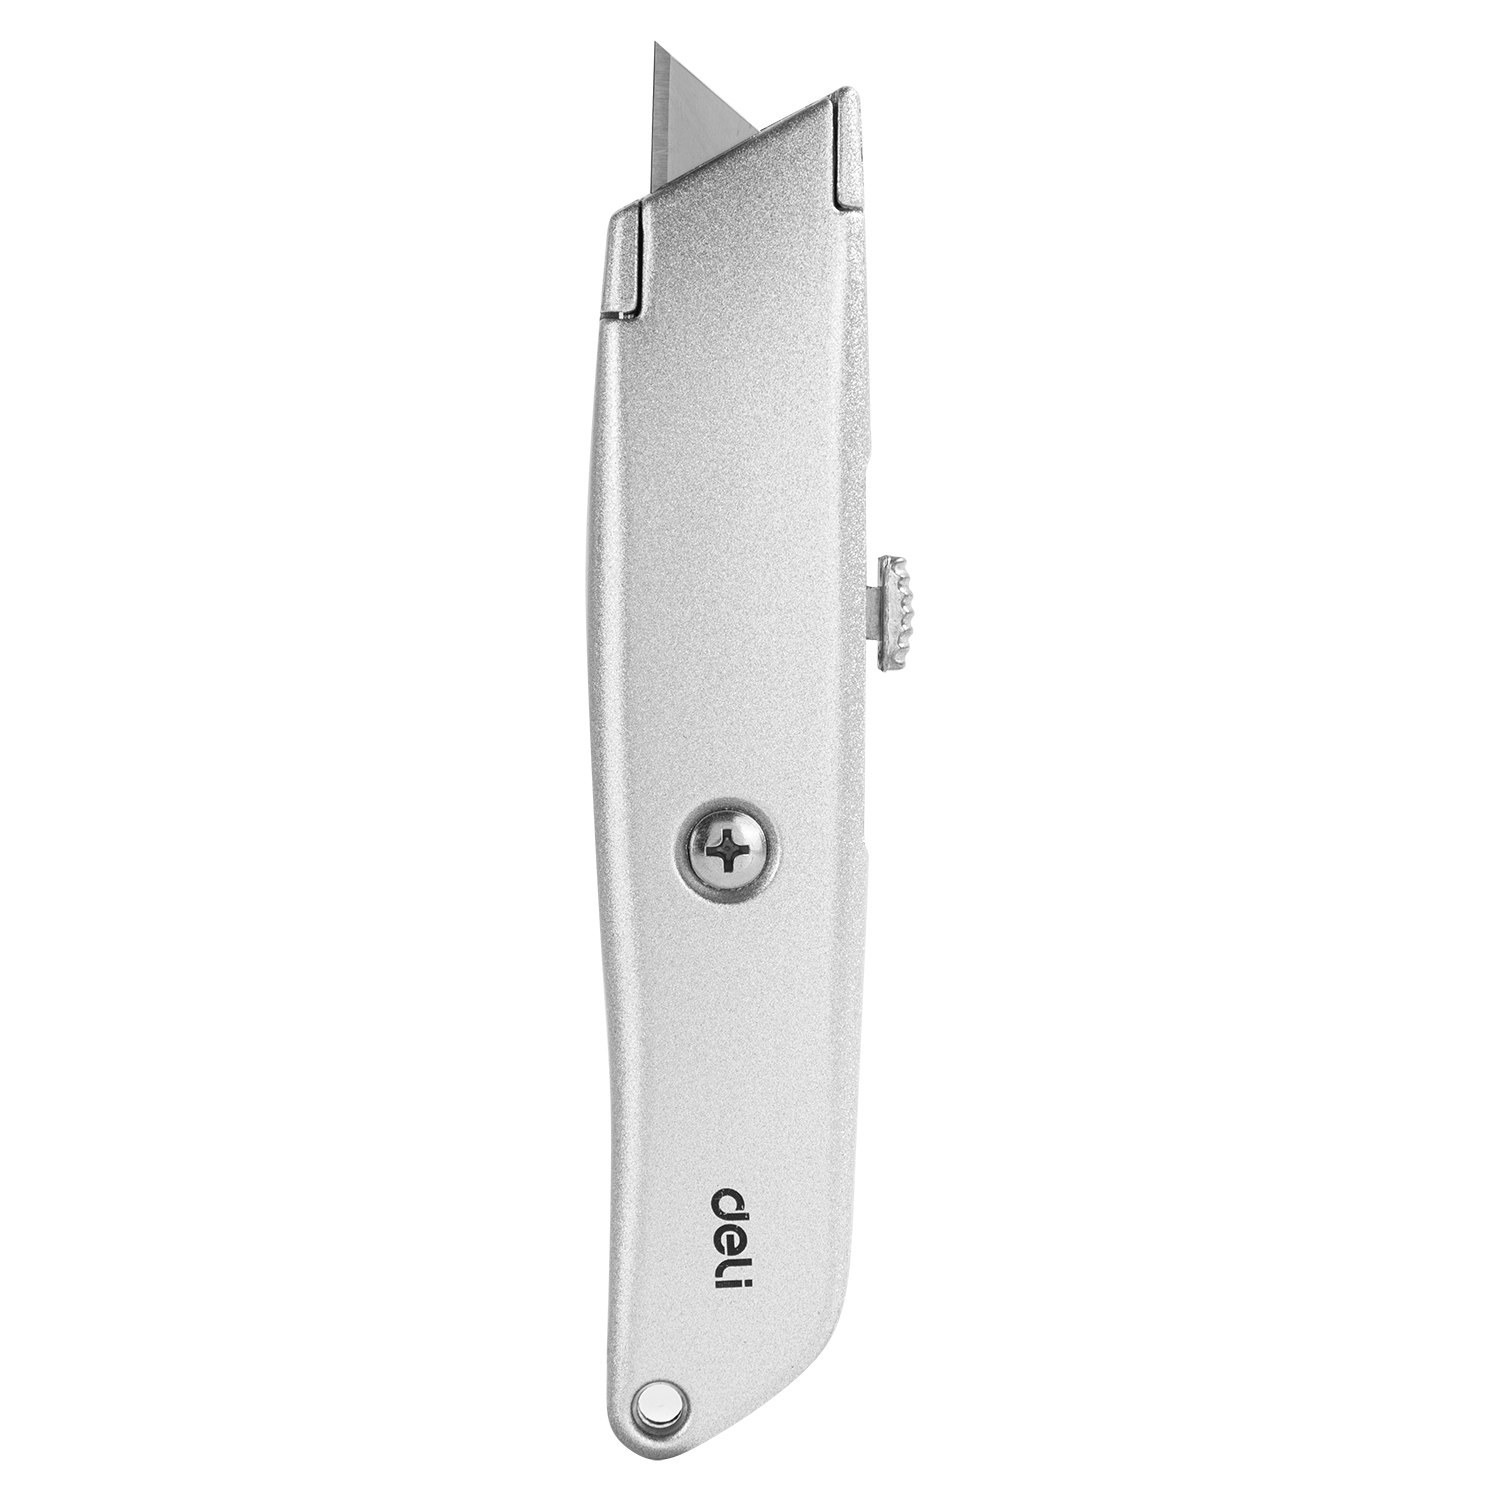 нож канцелярский deli ht4018 с выдвижным лезвием 18мм ck sk2 18mm Универсальный строительный нож с Т-образным лезвием Deli DL4260 19мм (алюминиевый корпус)